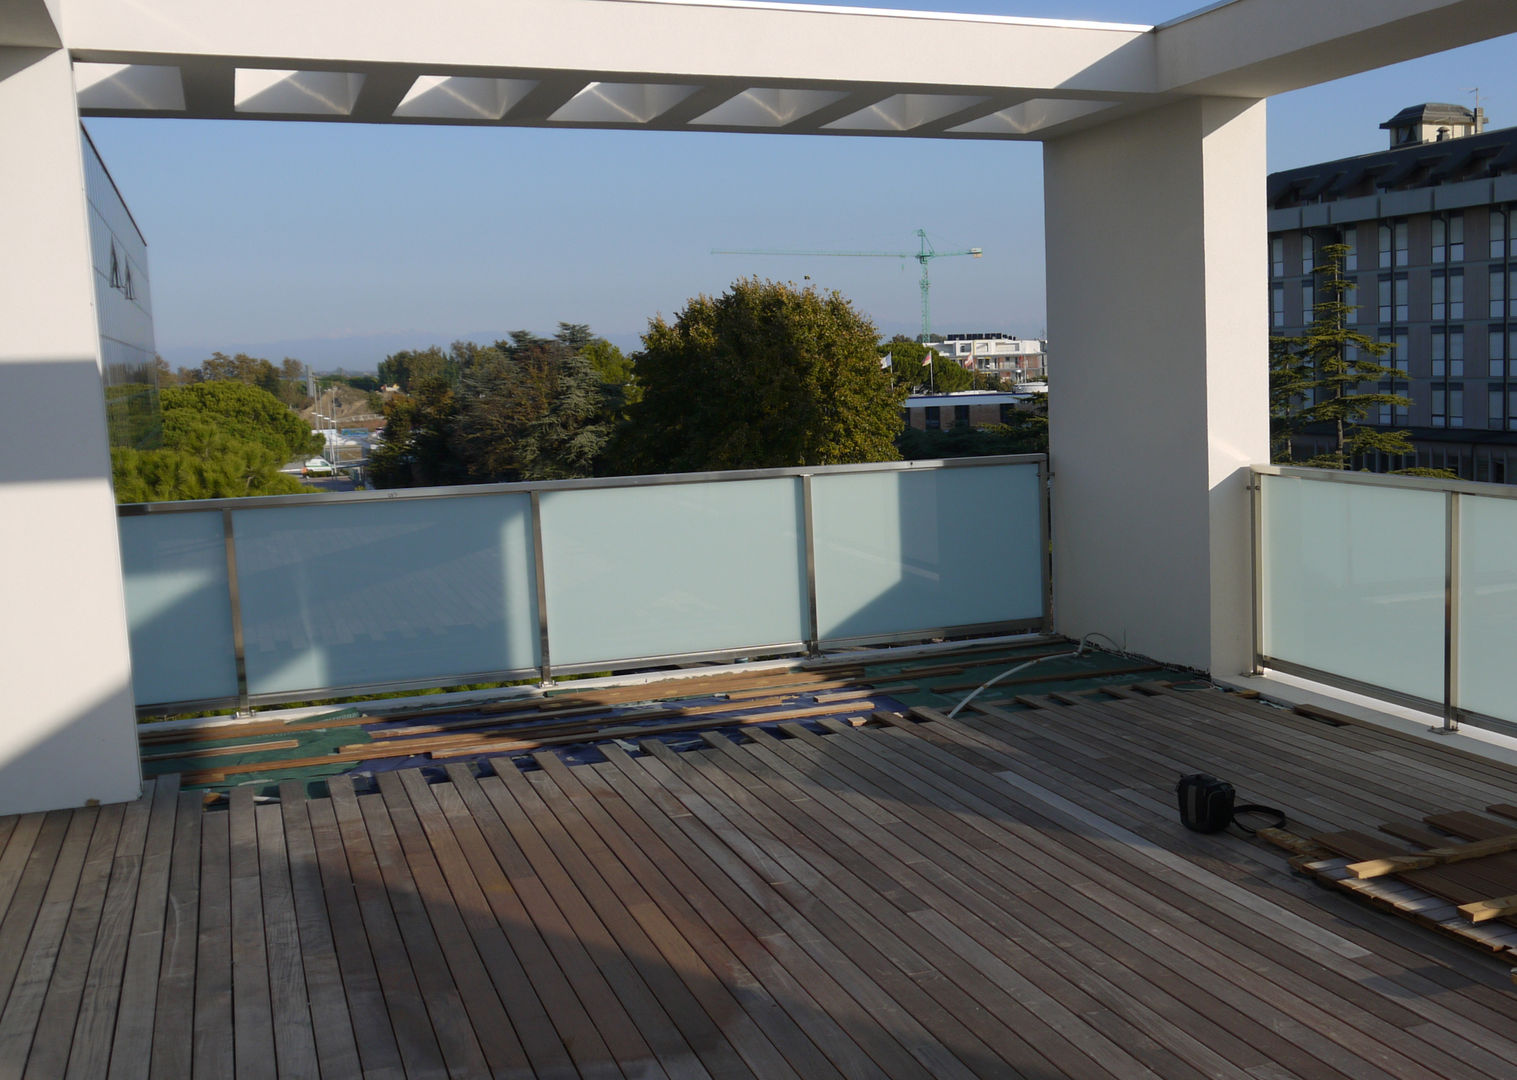 Un attico a Jesolo., ESTERNIDAUTORE ESTERNIDAUTORE Minimalist balcony, veranda & terrace